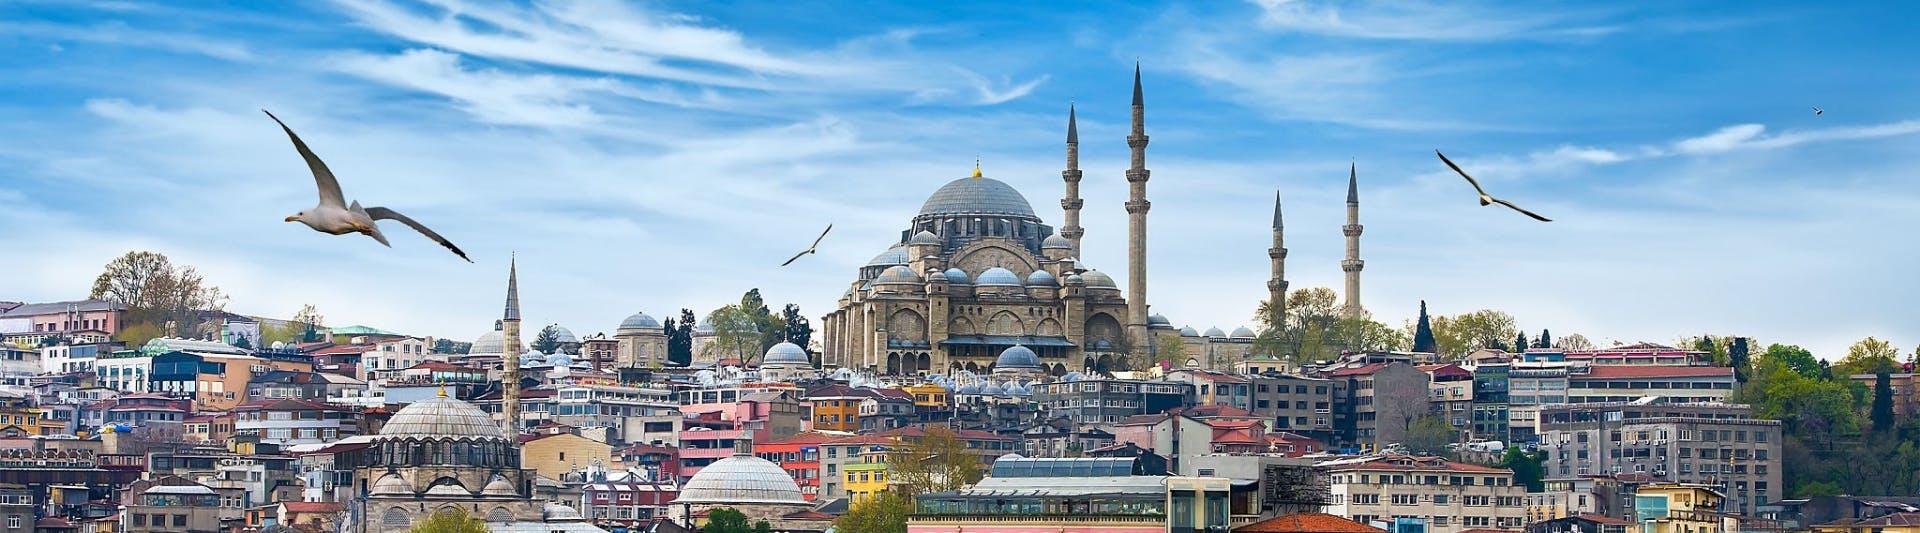 İstanbul’da Gezilecek Doğal Yerler ve Rotalar